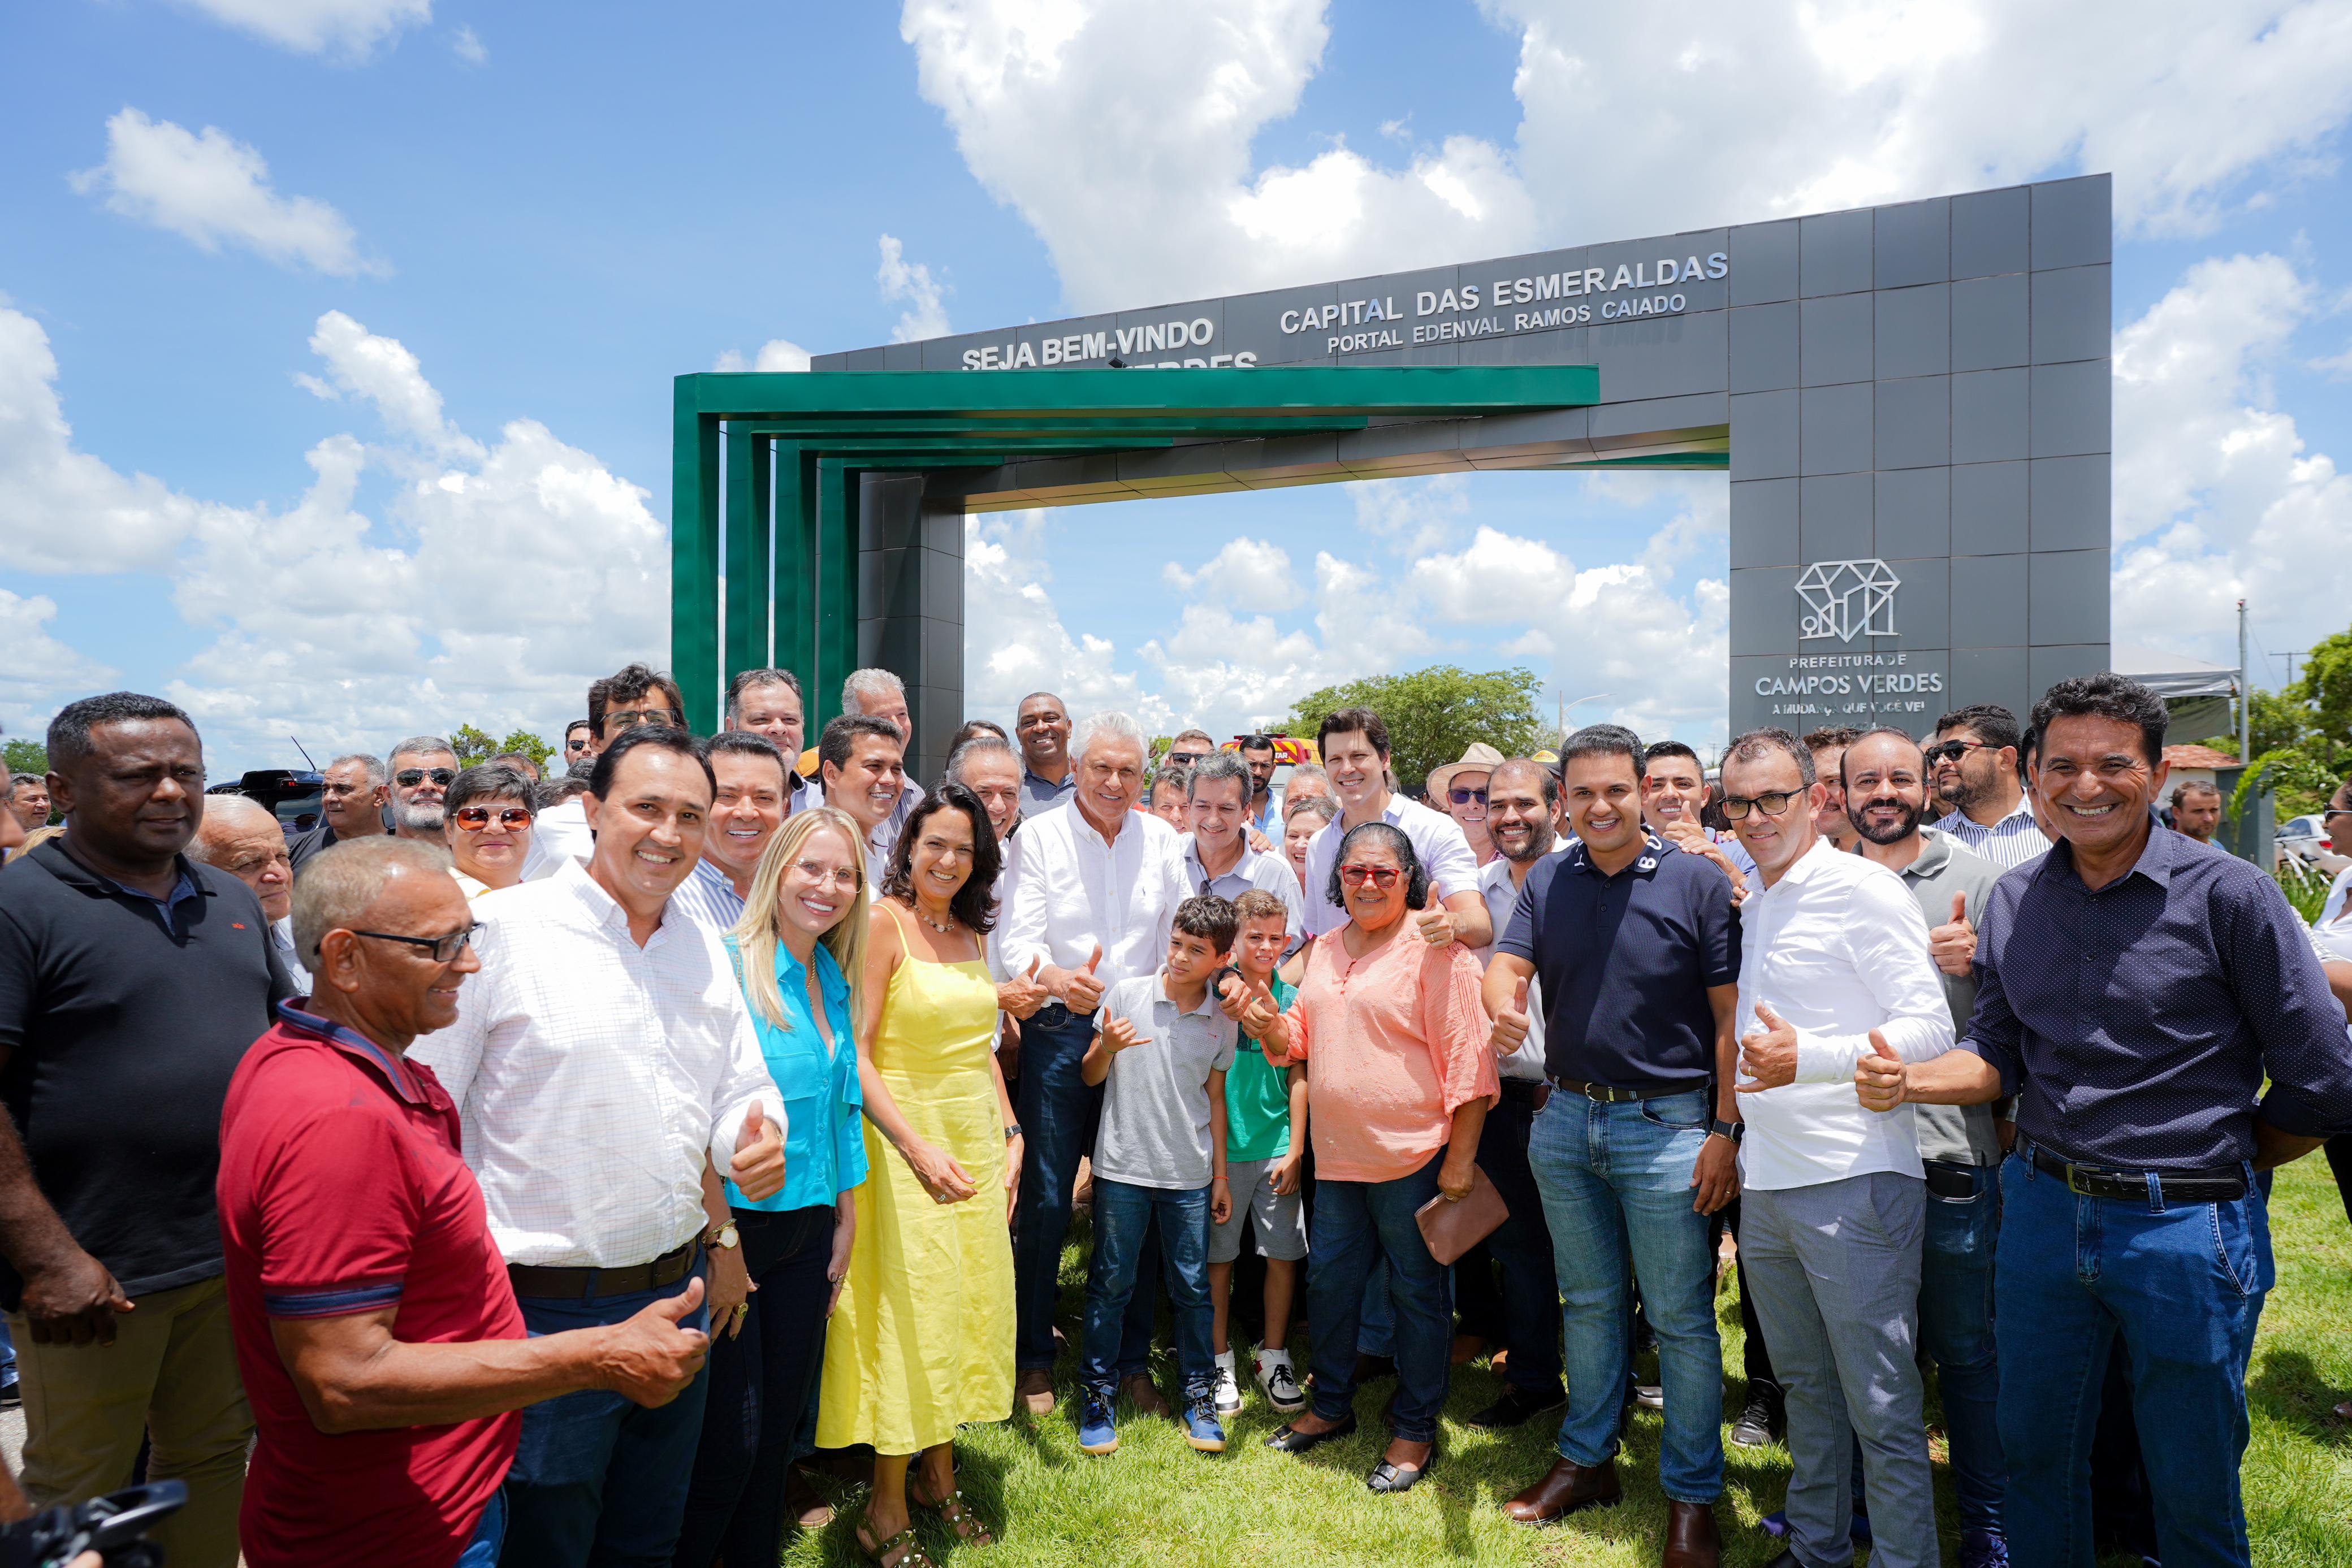  Portal homenageia pai do governador Ronaldo Caiado, em Campos Verdes